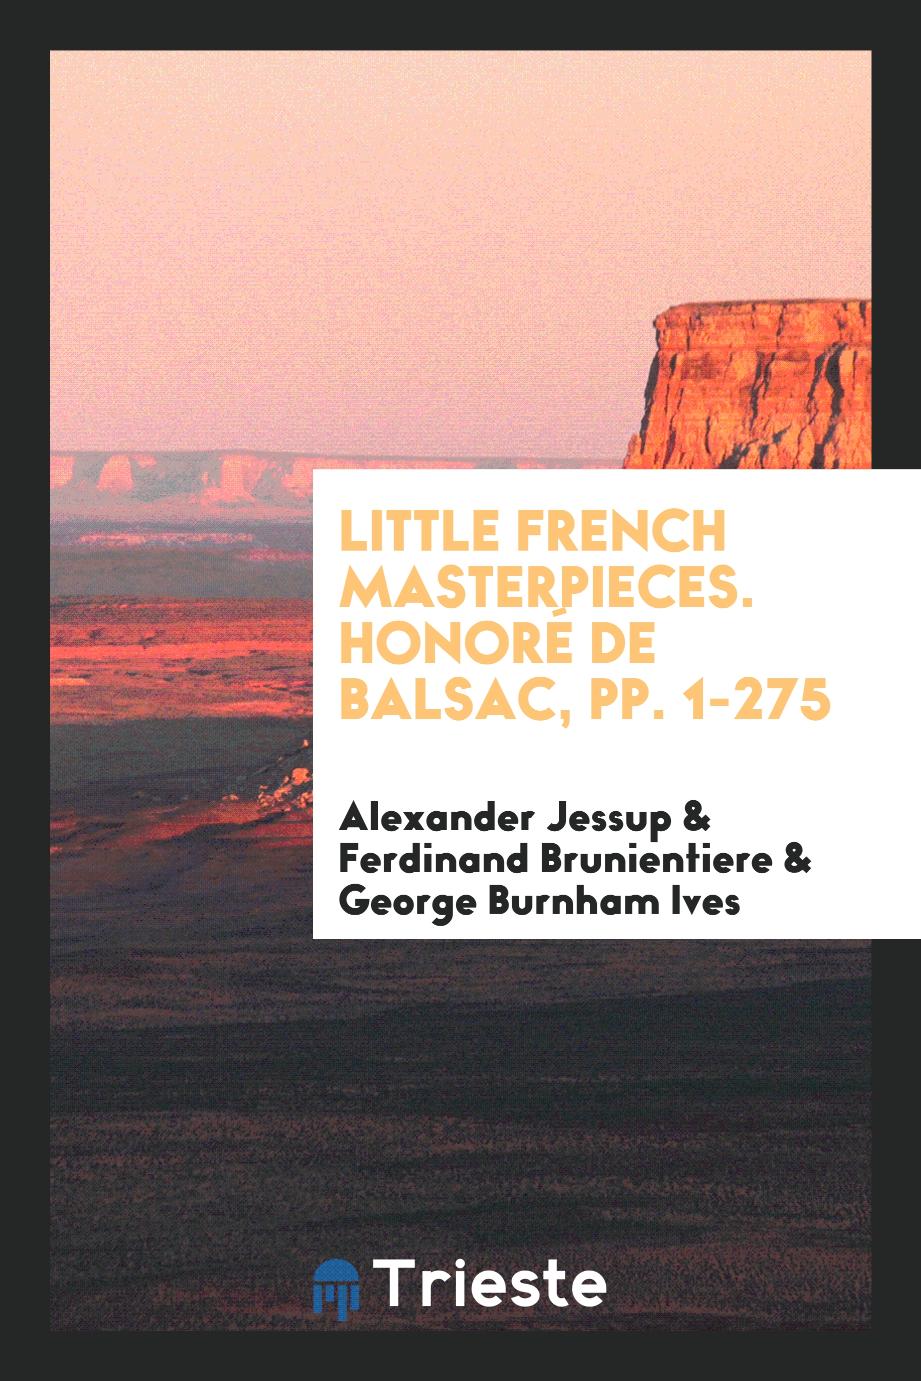 Little French Masterpieces. Honoré de Balsac, pp. 1-275